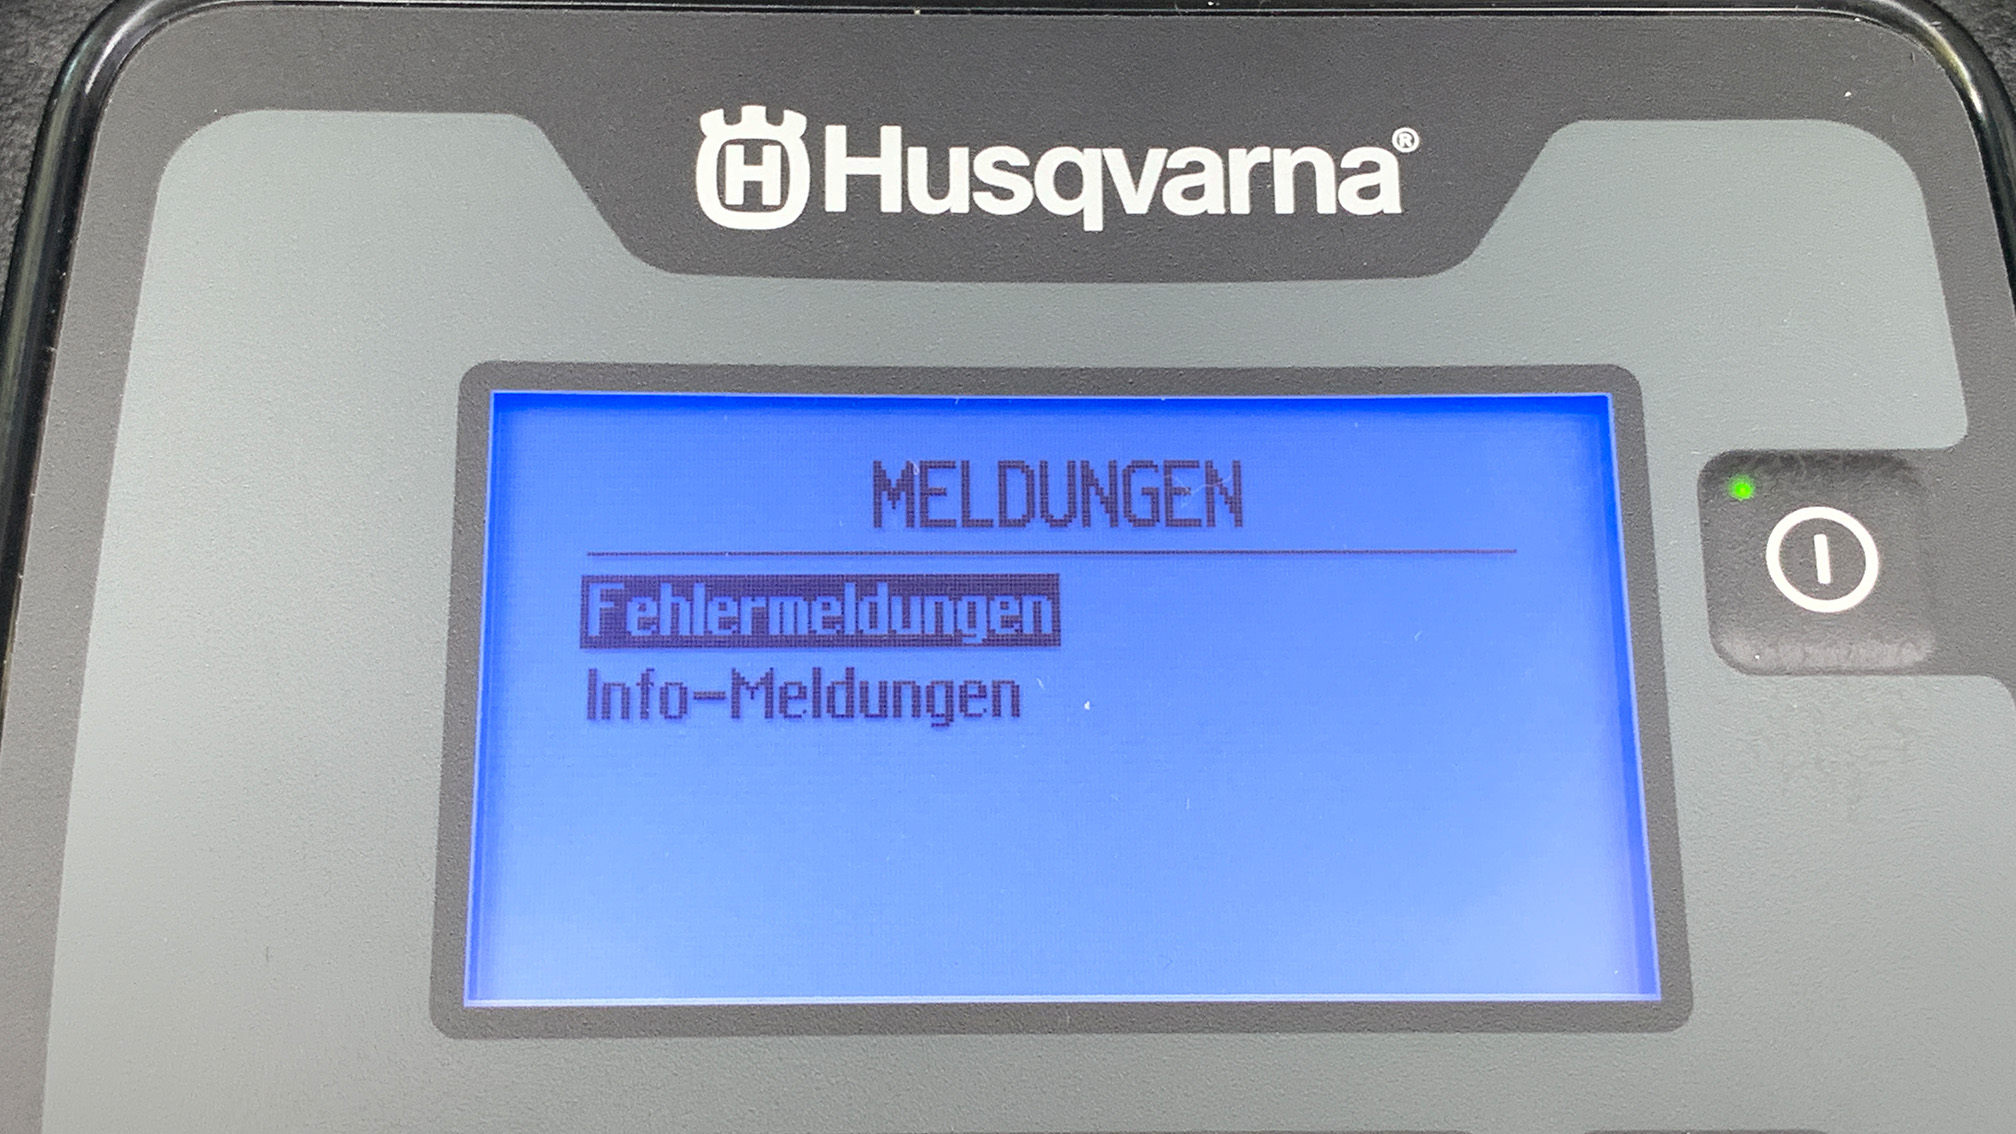 Husqvarna Automower 305 (2020) im Test - Mein bisher bester Mähroboter